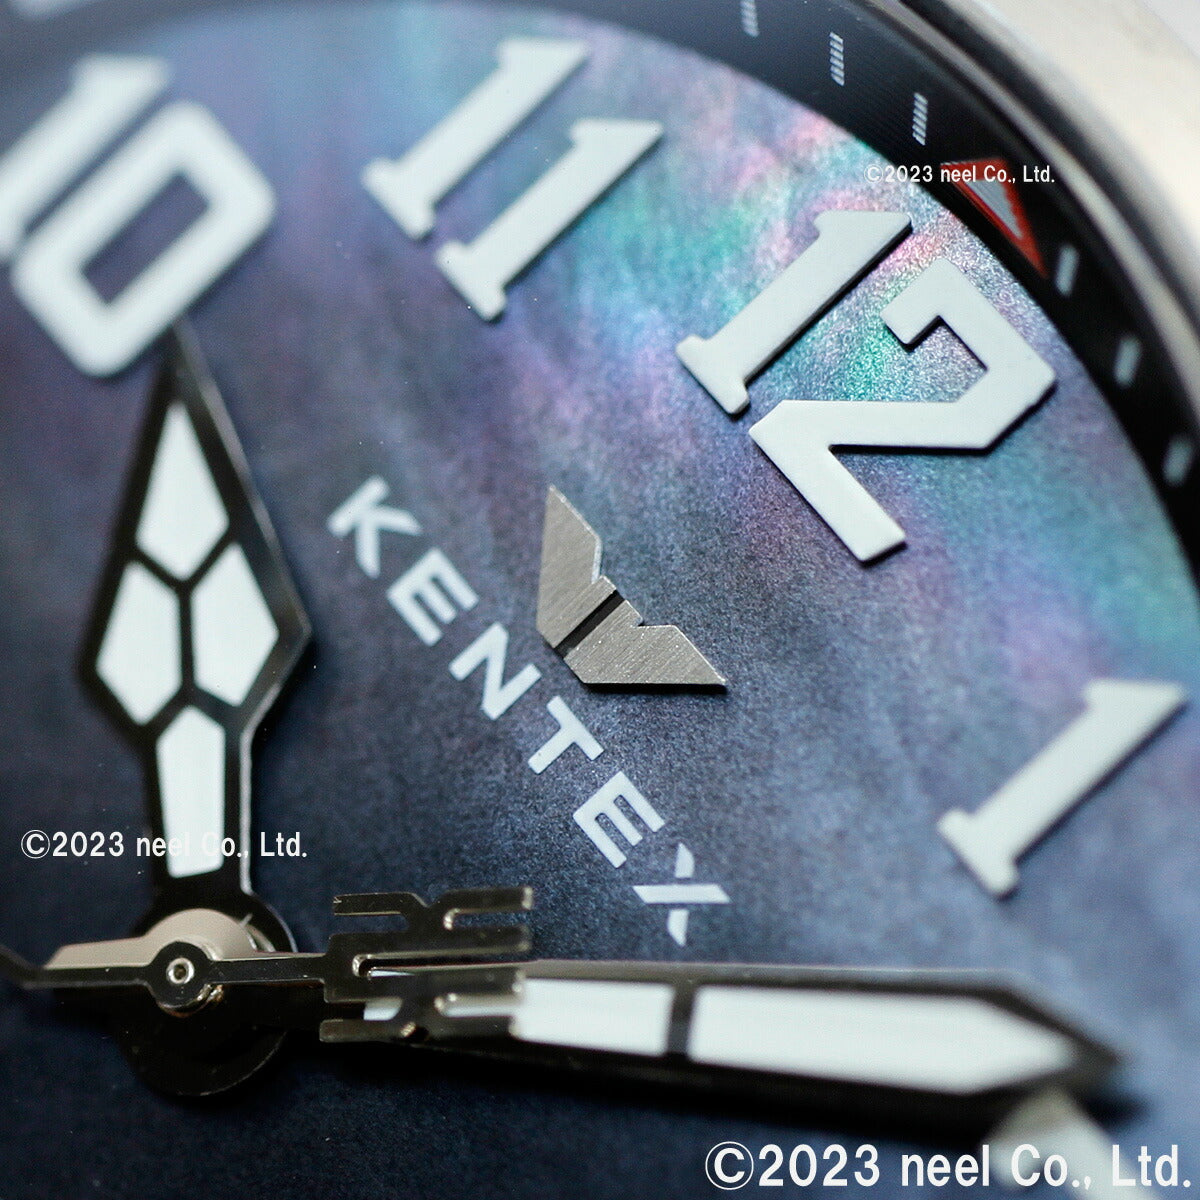 ケンテックス KENTEX 腕時計 時計 メンズ 耐磁時計 自動巻き プロガウス 日本製 S769X-2